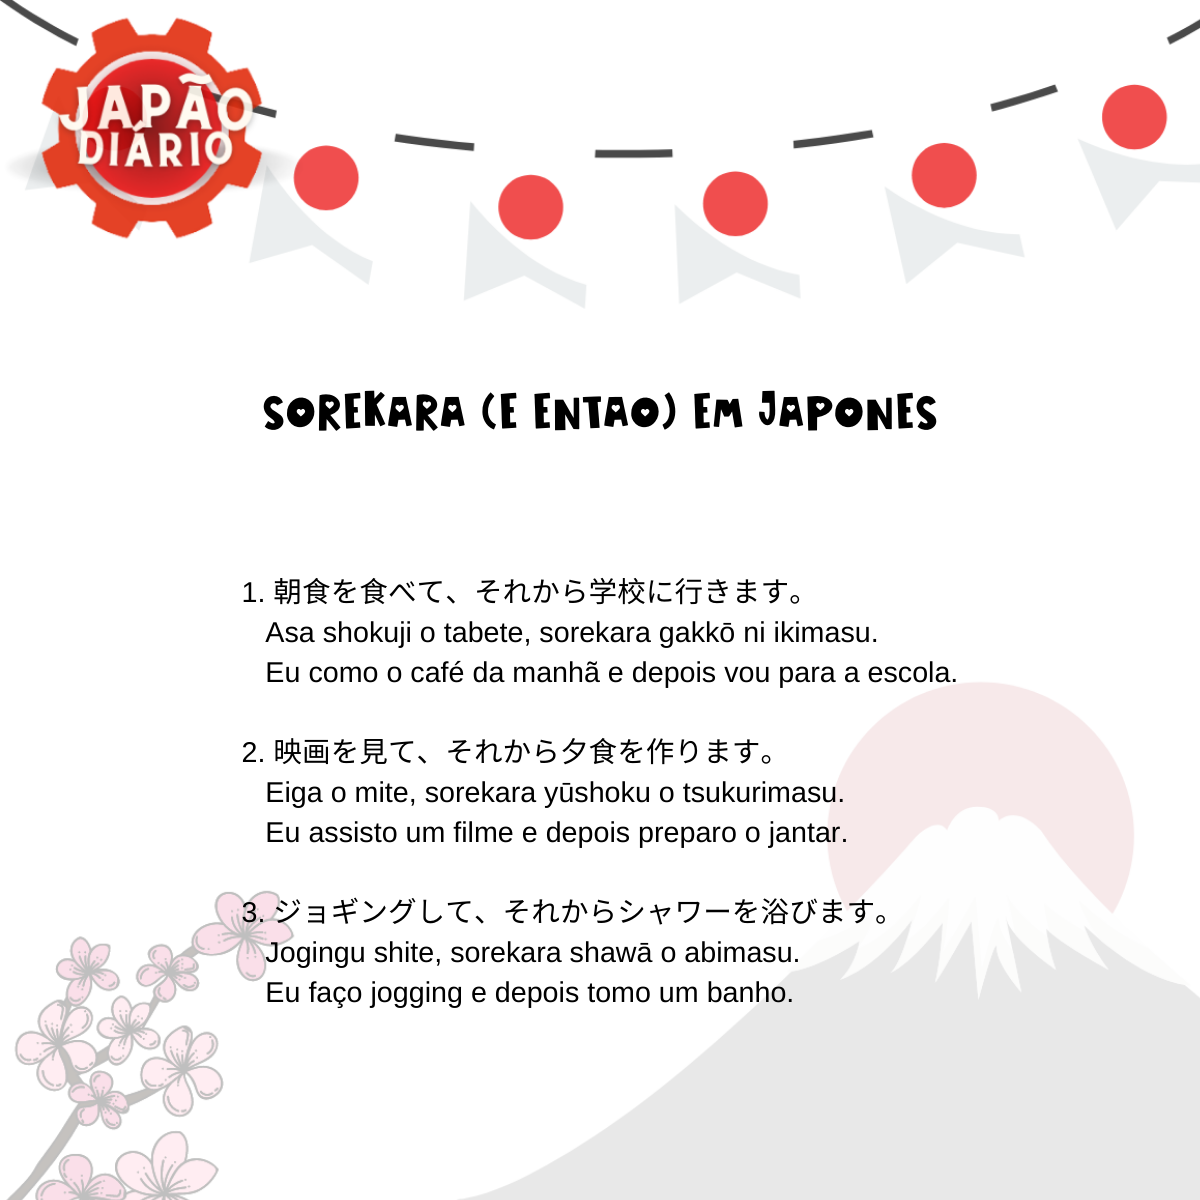 You are currently viewing Sorekara em Japonês (e Então).